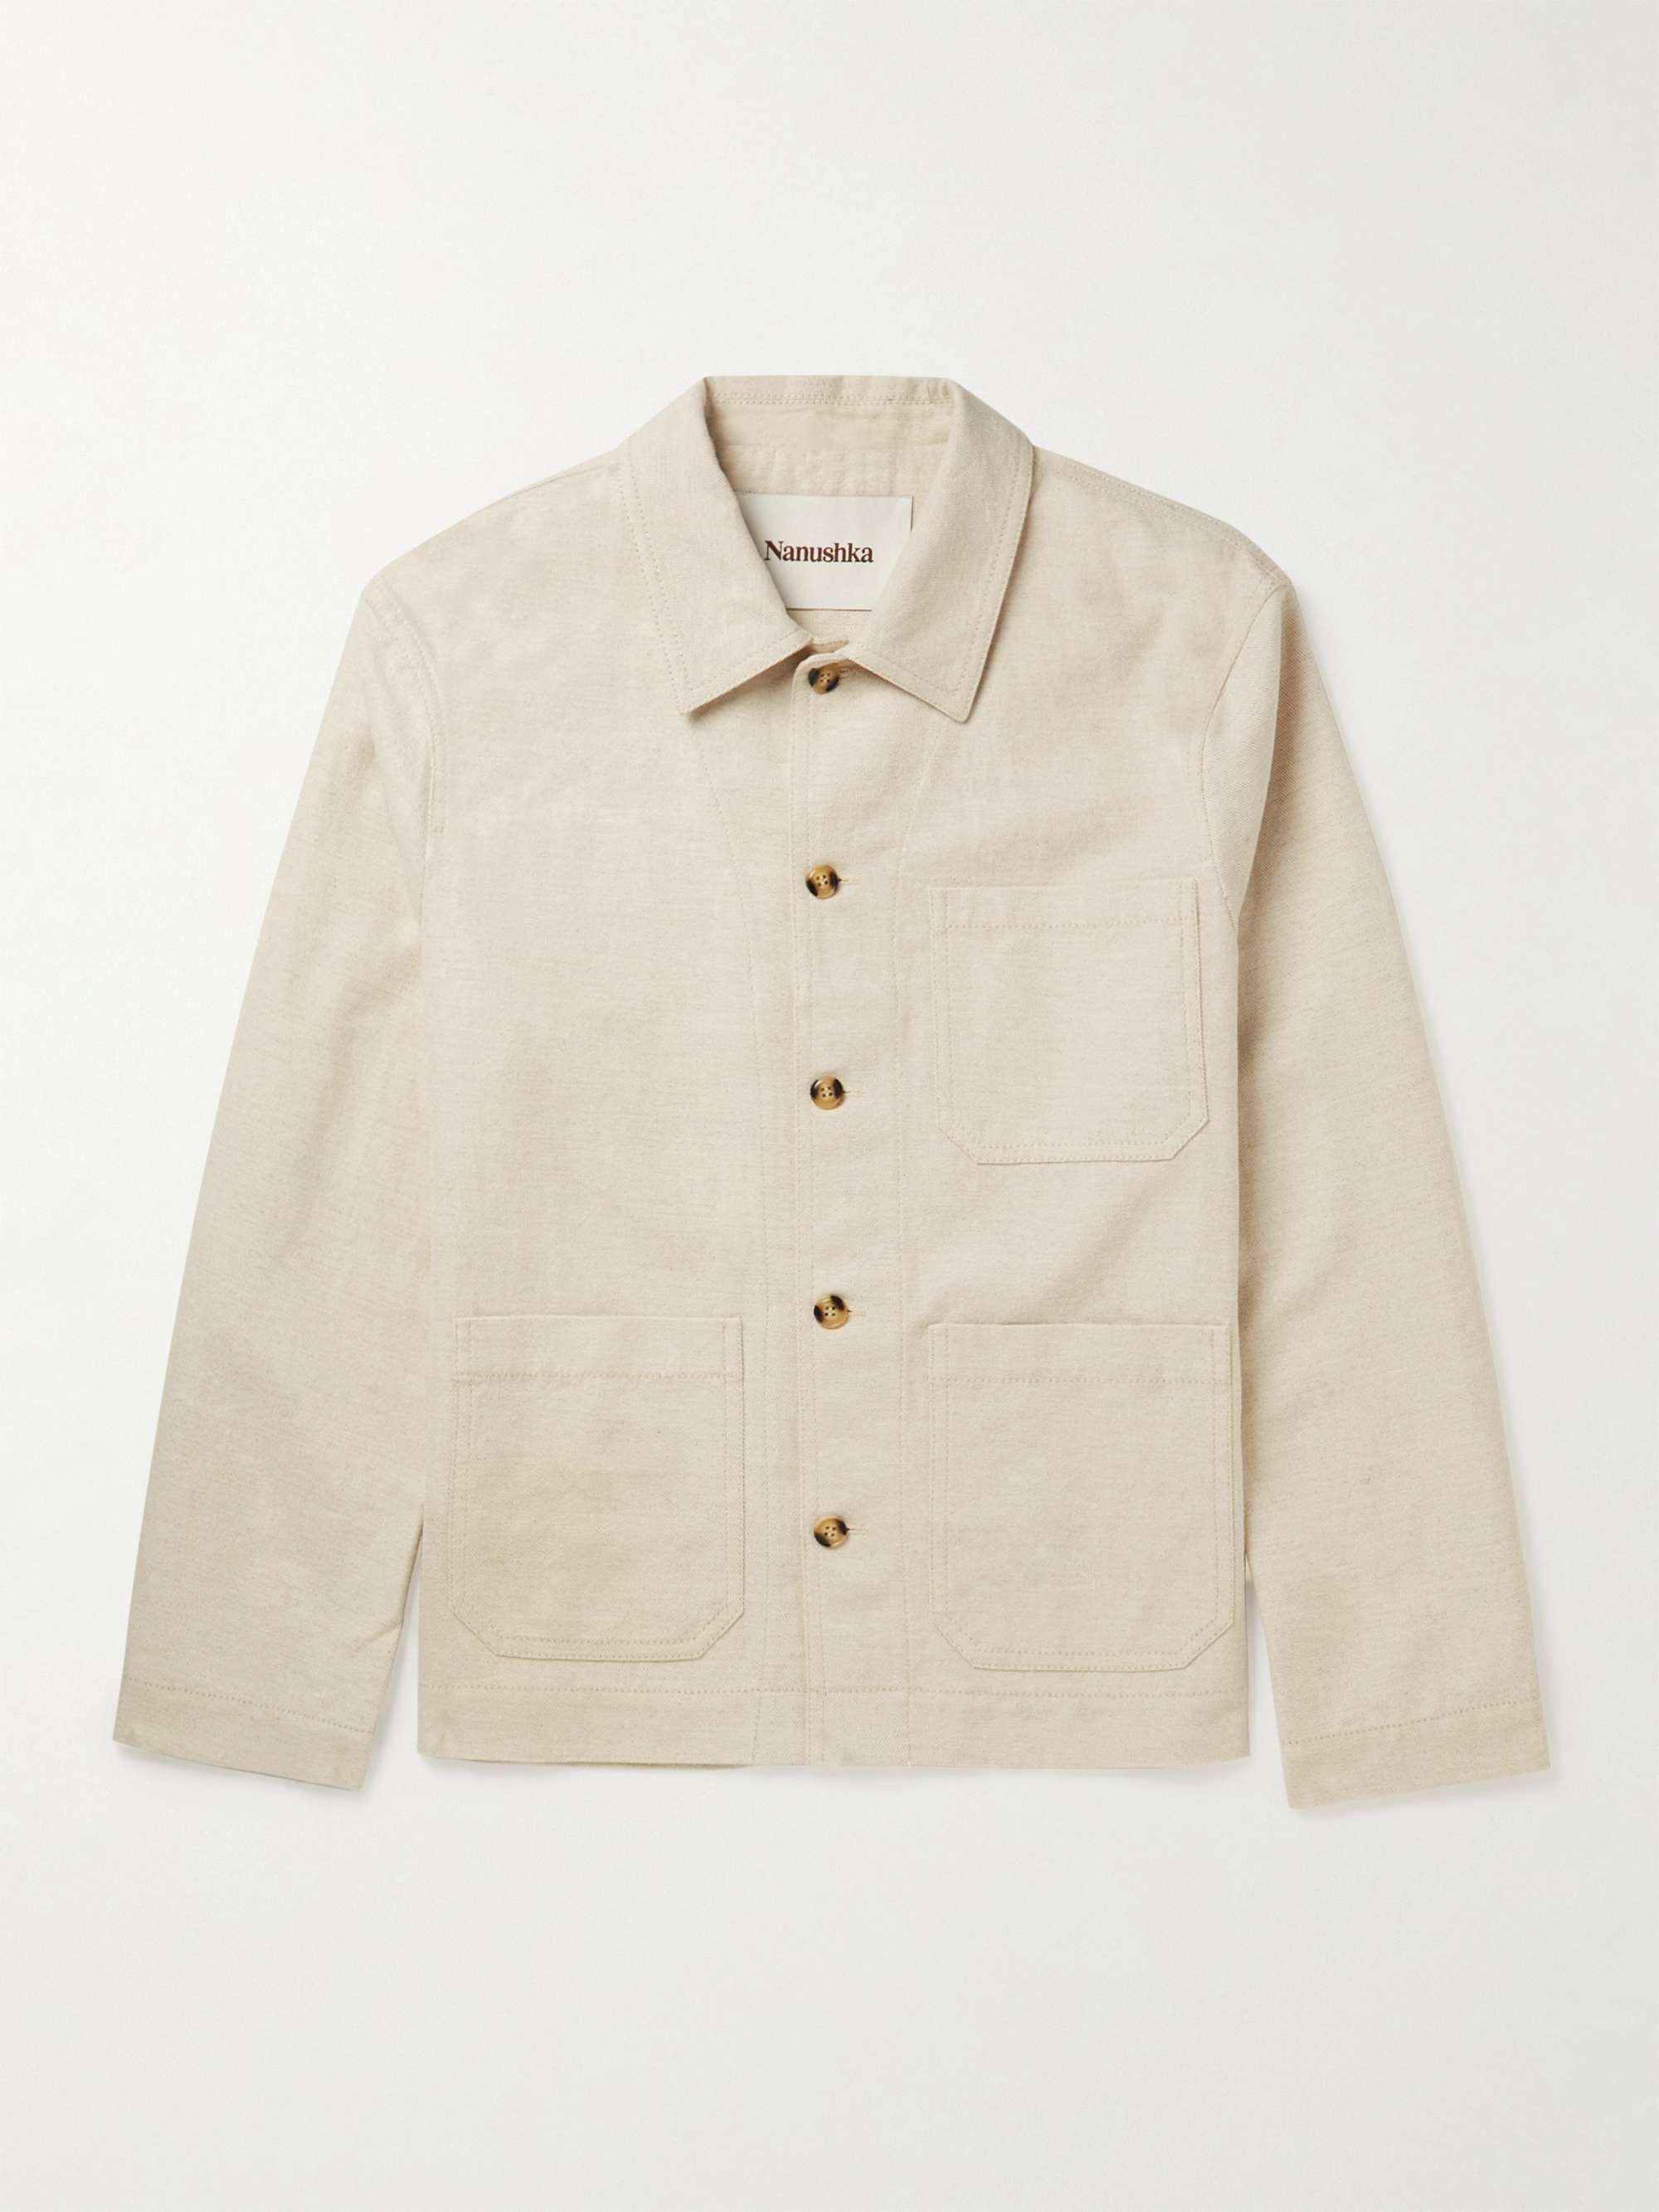 Off-white Saon Cotton and Linen-Blend Twill Jacket | NANUSHKA | MR PORTER